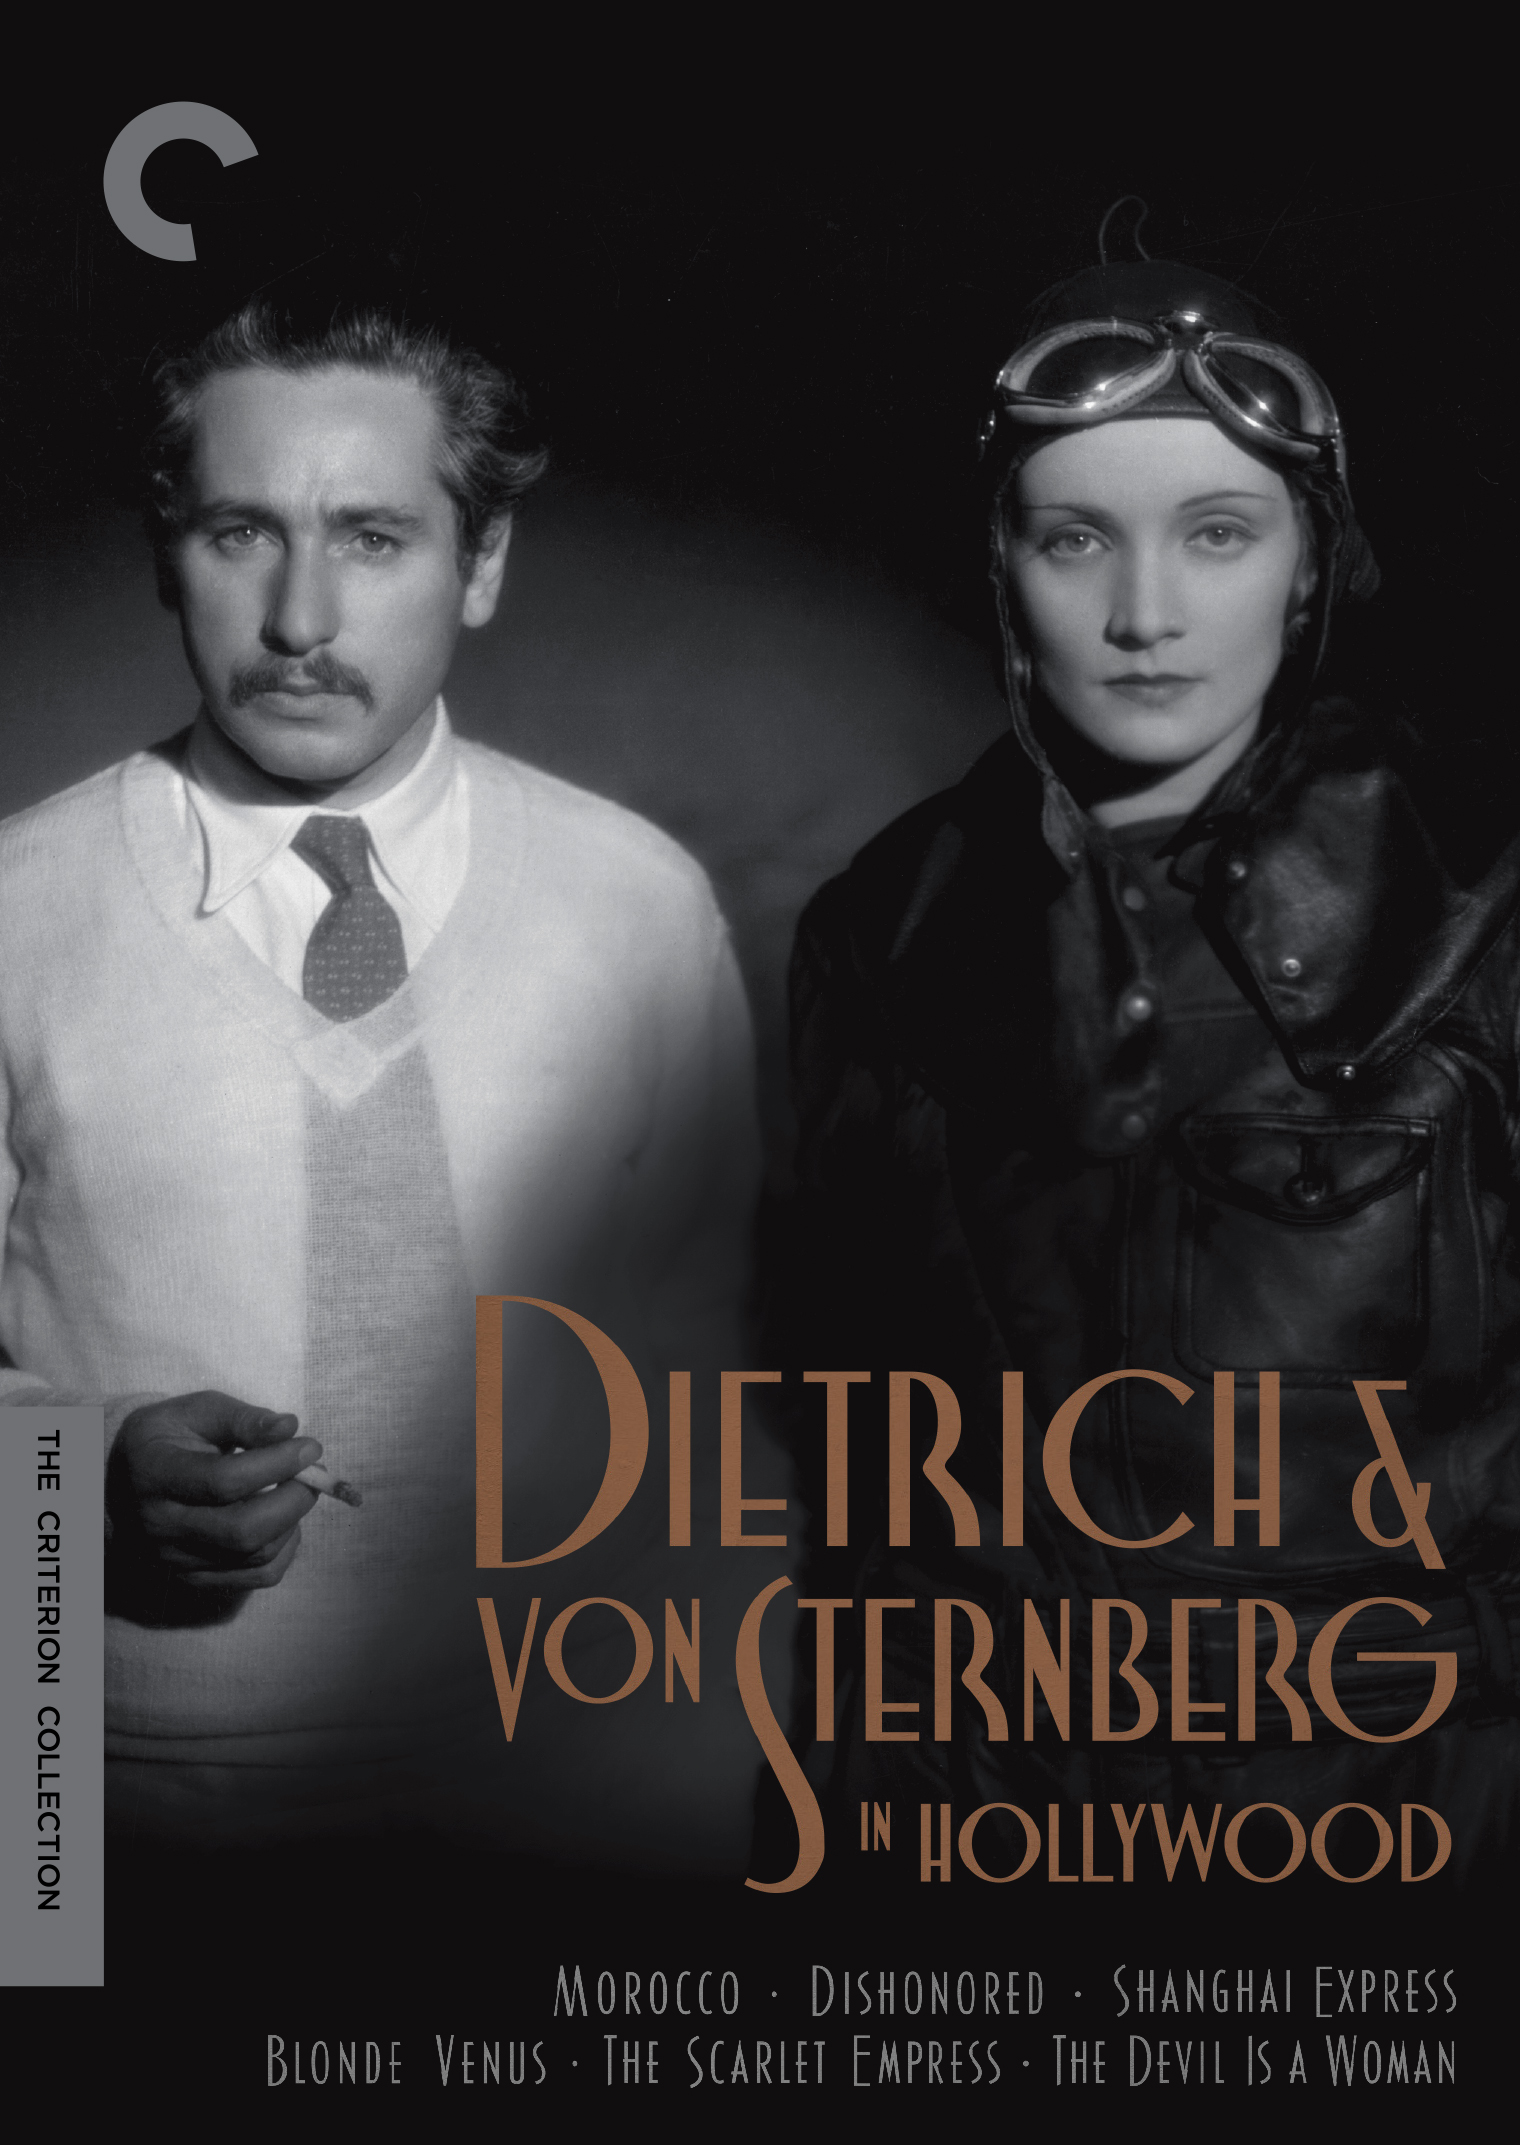 Dietrich & von Sternberg in Hollywood